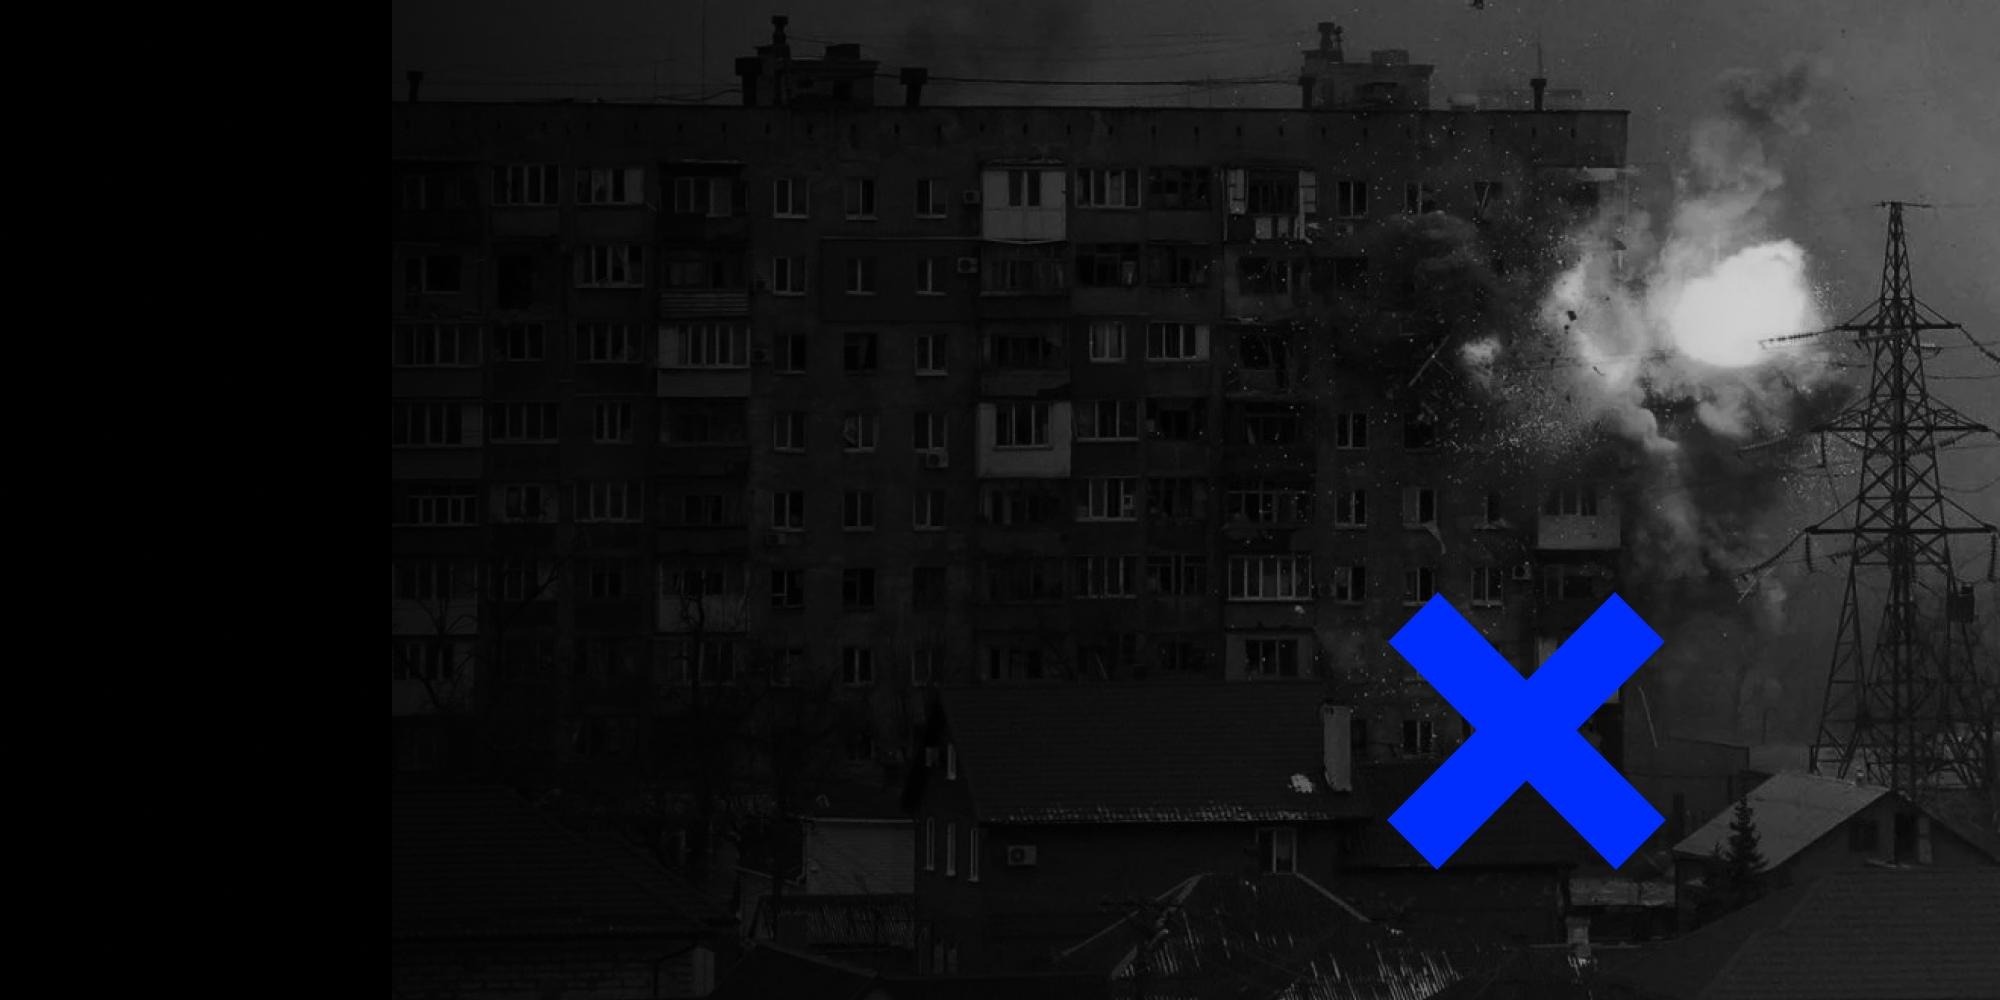 ВИДЕОФЕЙК: В 2014 году Богдан Буткевич призвал уничтожить 1,5 млн населения на Донбассе